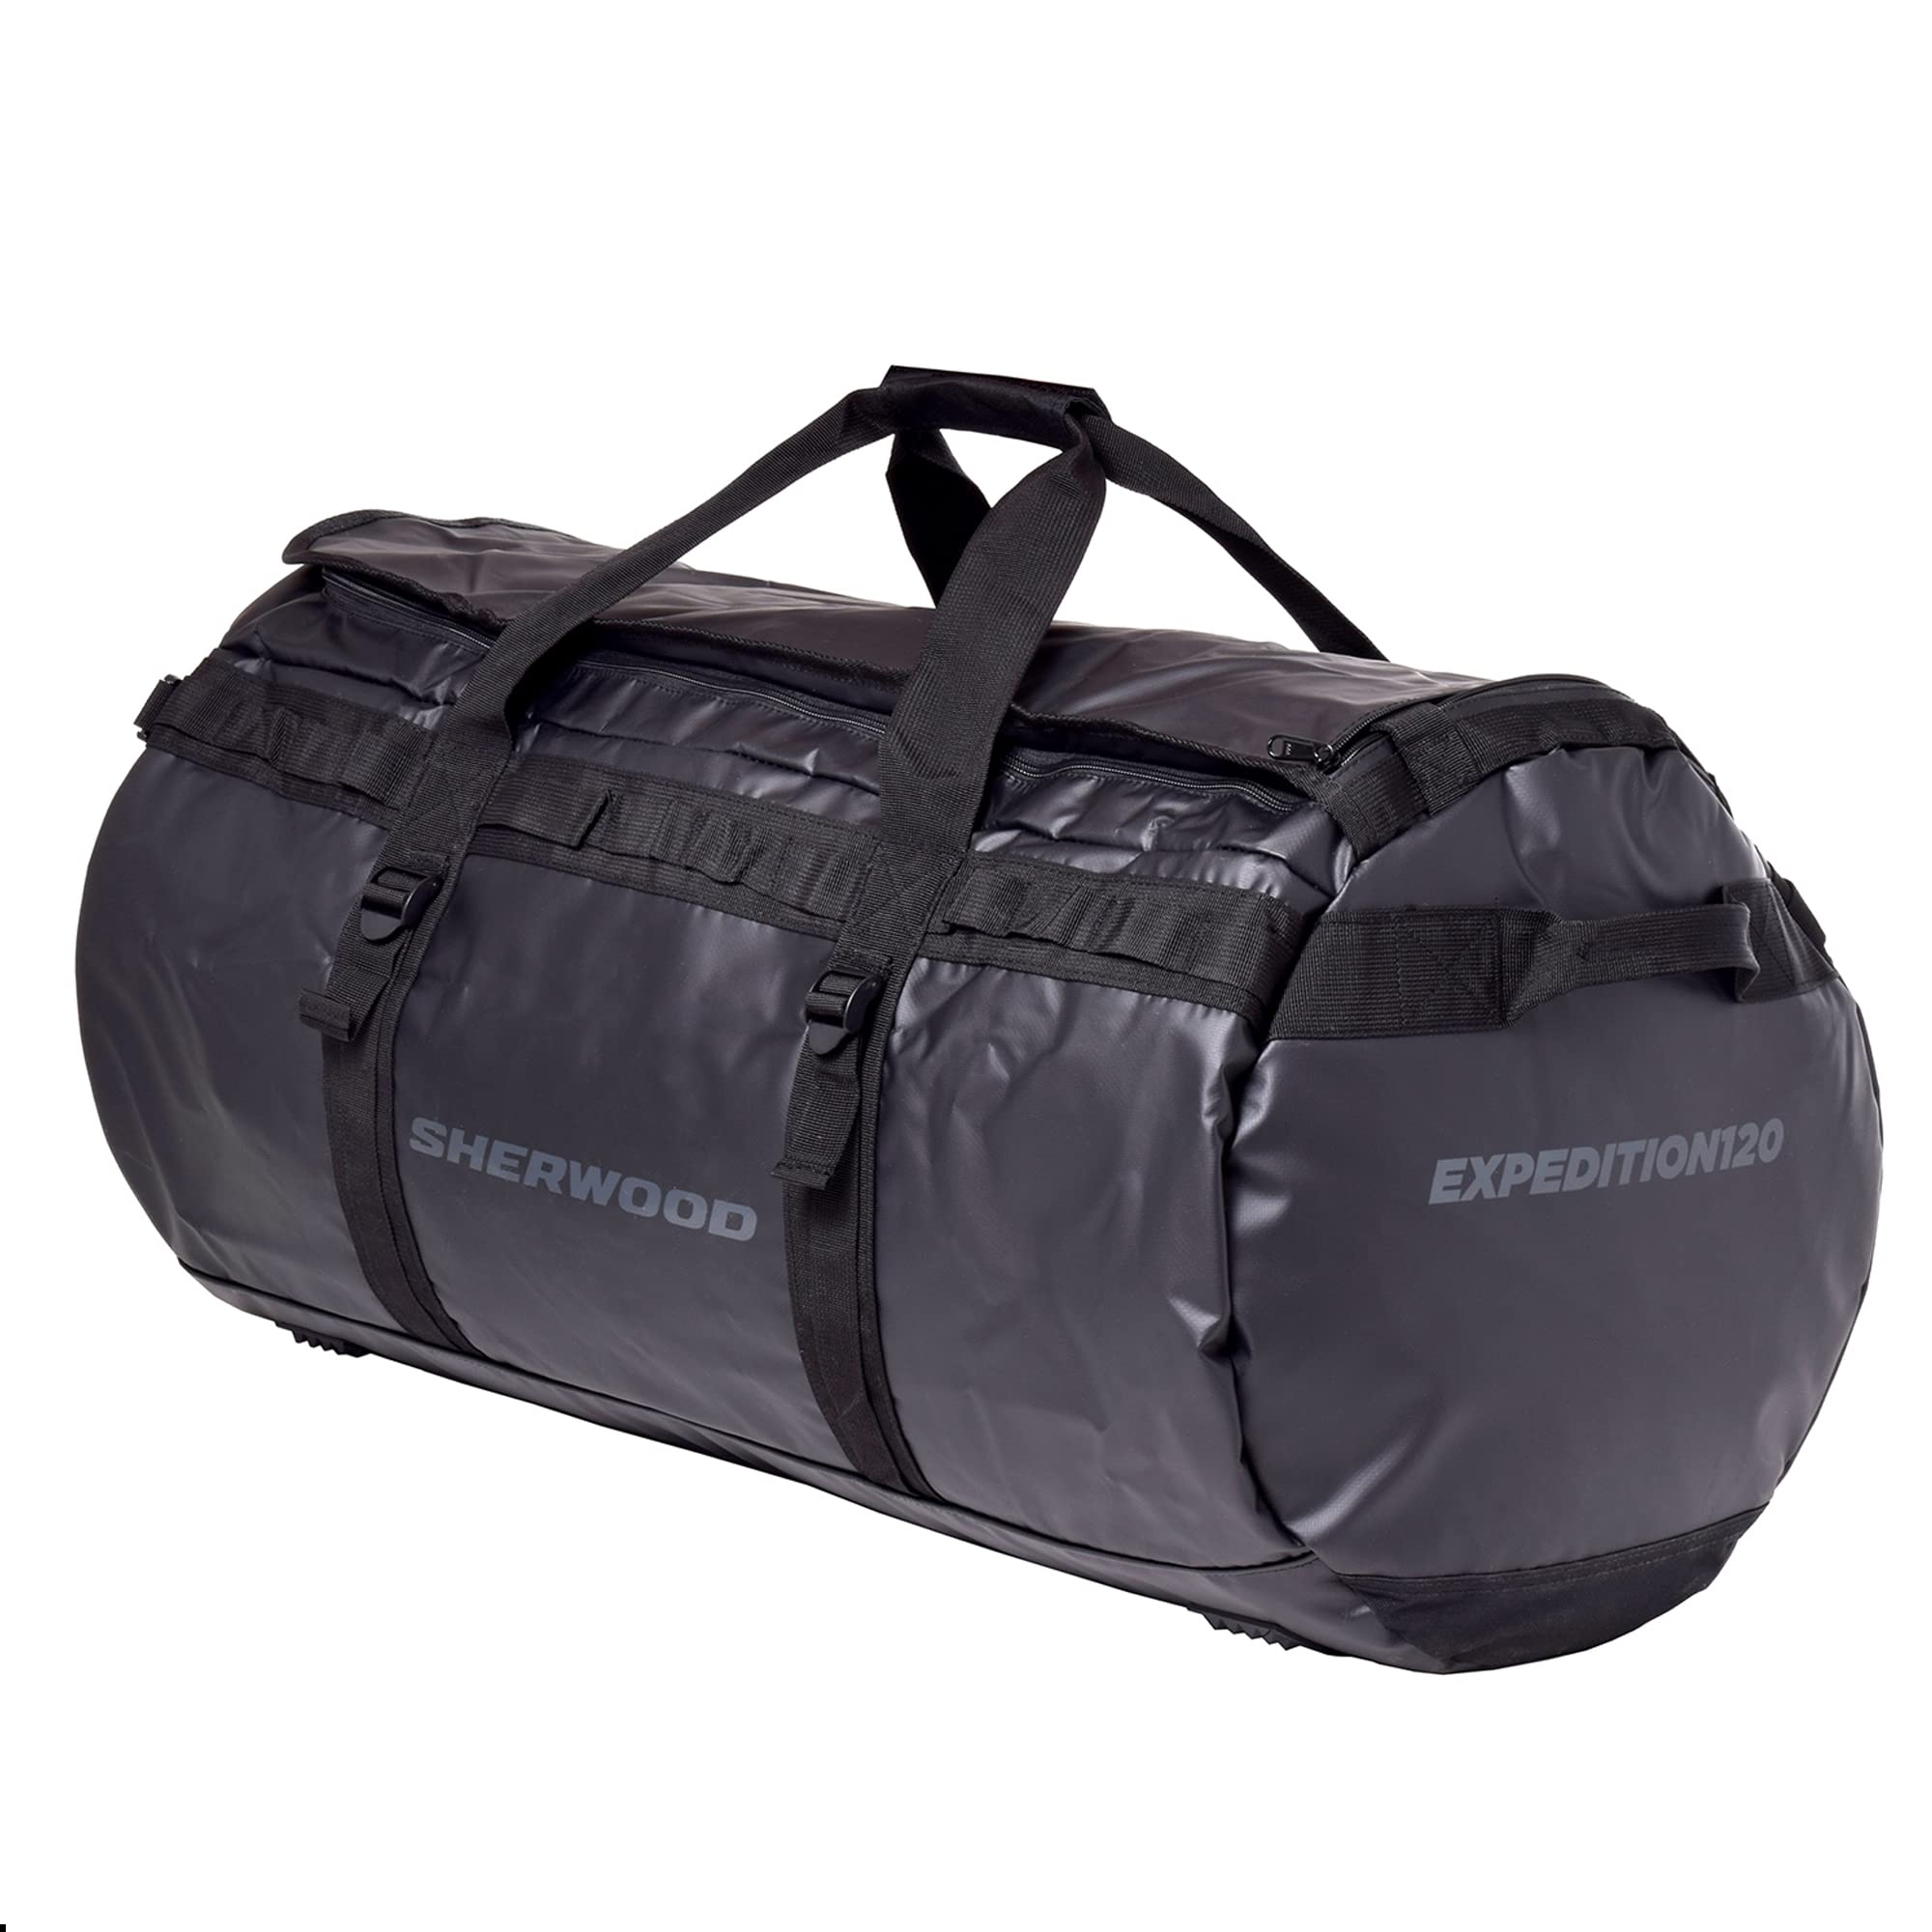 SHER-Wood Reisetasche Expedition, Sporttasche mit 120 l Volumen, Tasche mit Rucksackfunktion, Travelbag wasserdicht, Duffel Bag schwarz